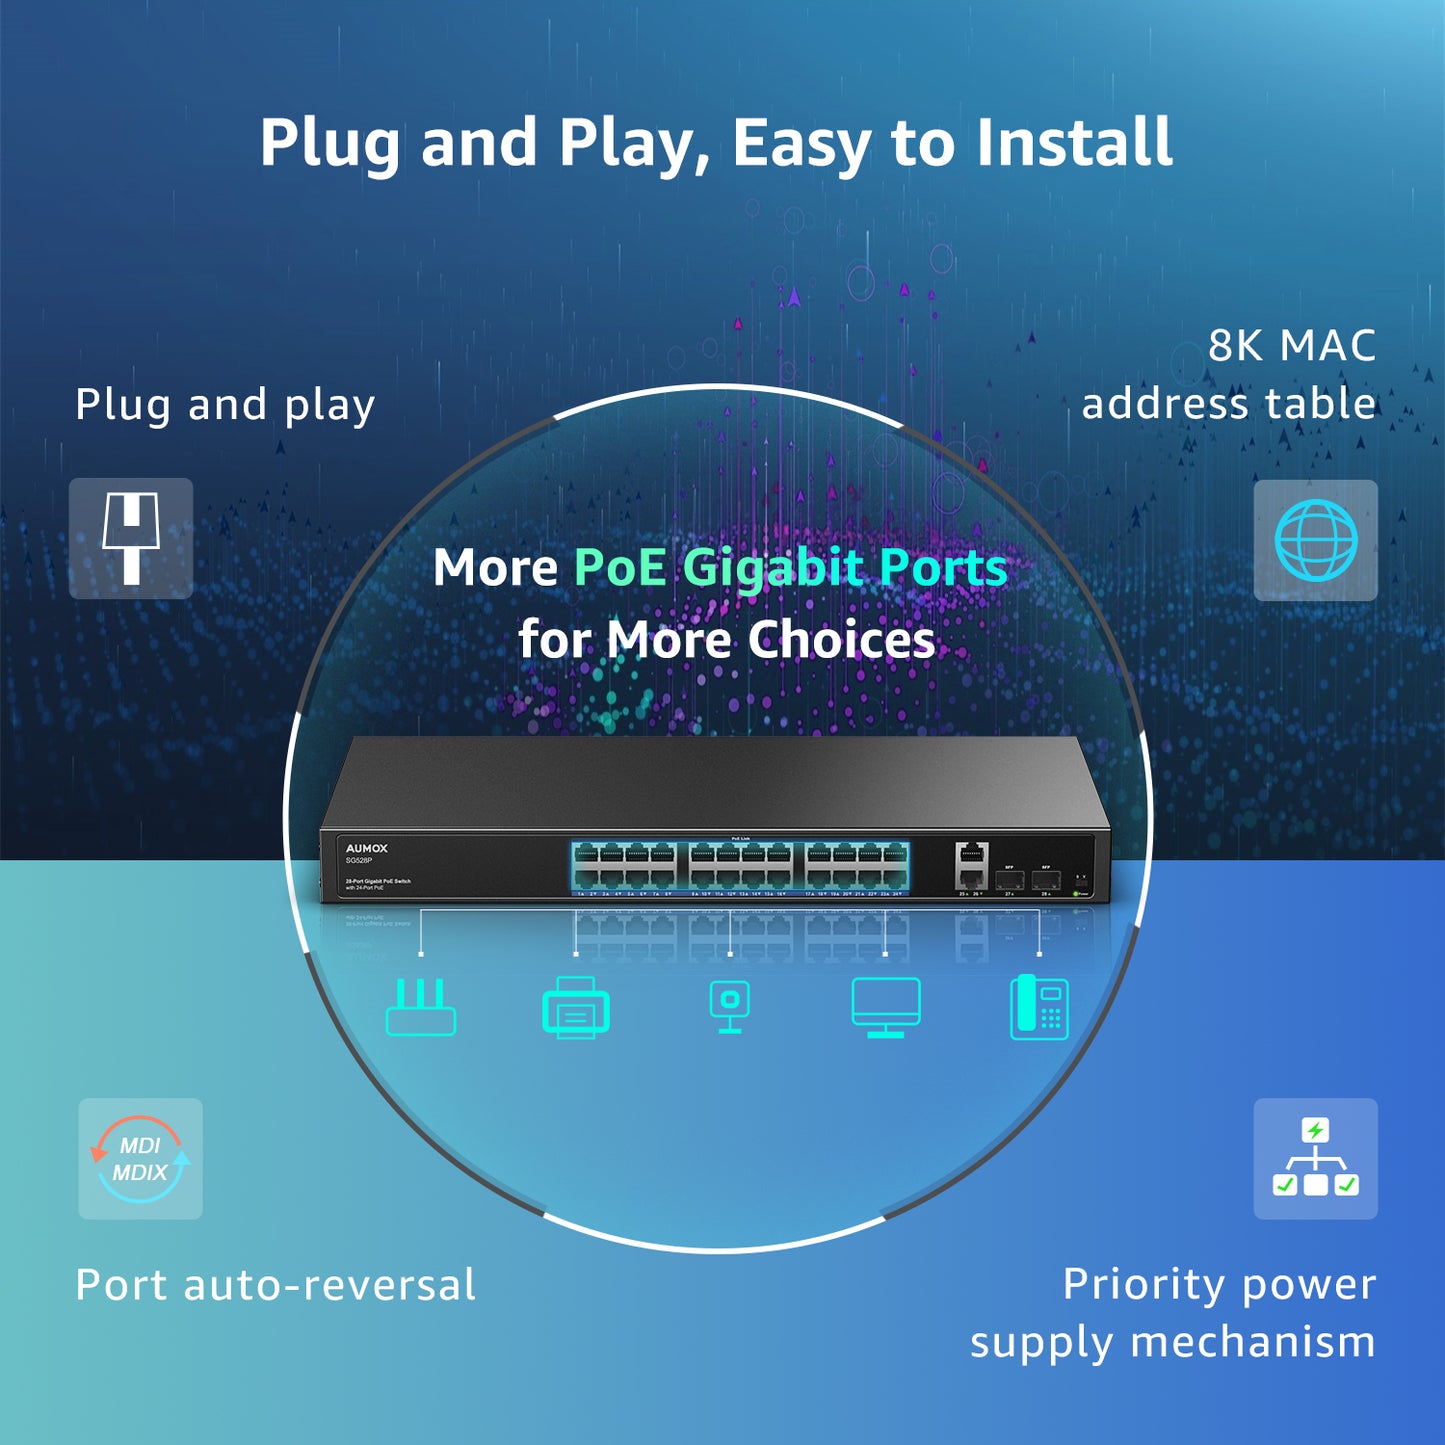 AUMOX Switch Gigabit PoE de 28 puertos 400W, con 24 puertos PoE y 2 puertos Uplink (SG528P)